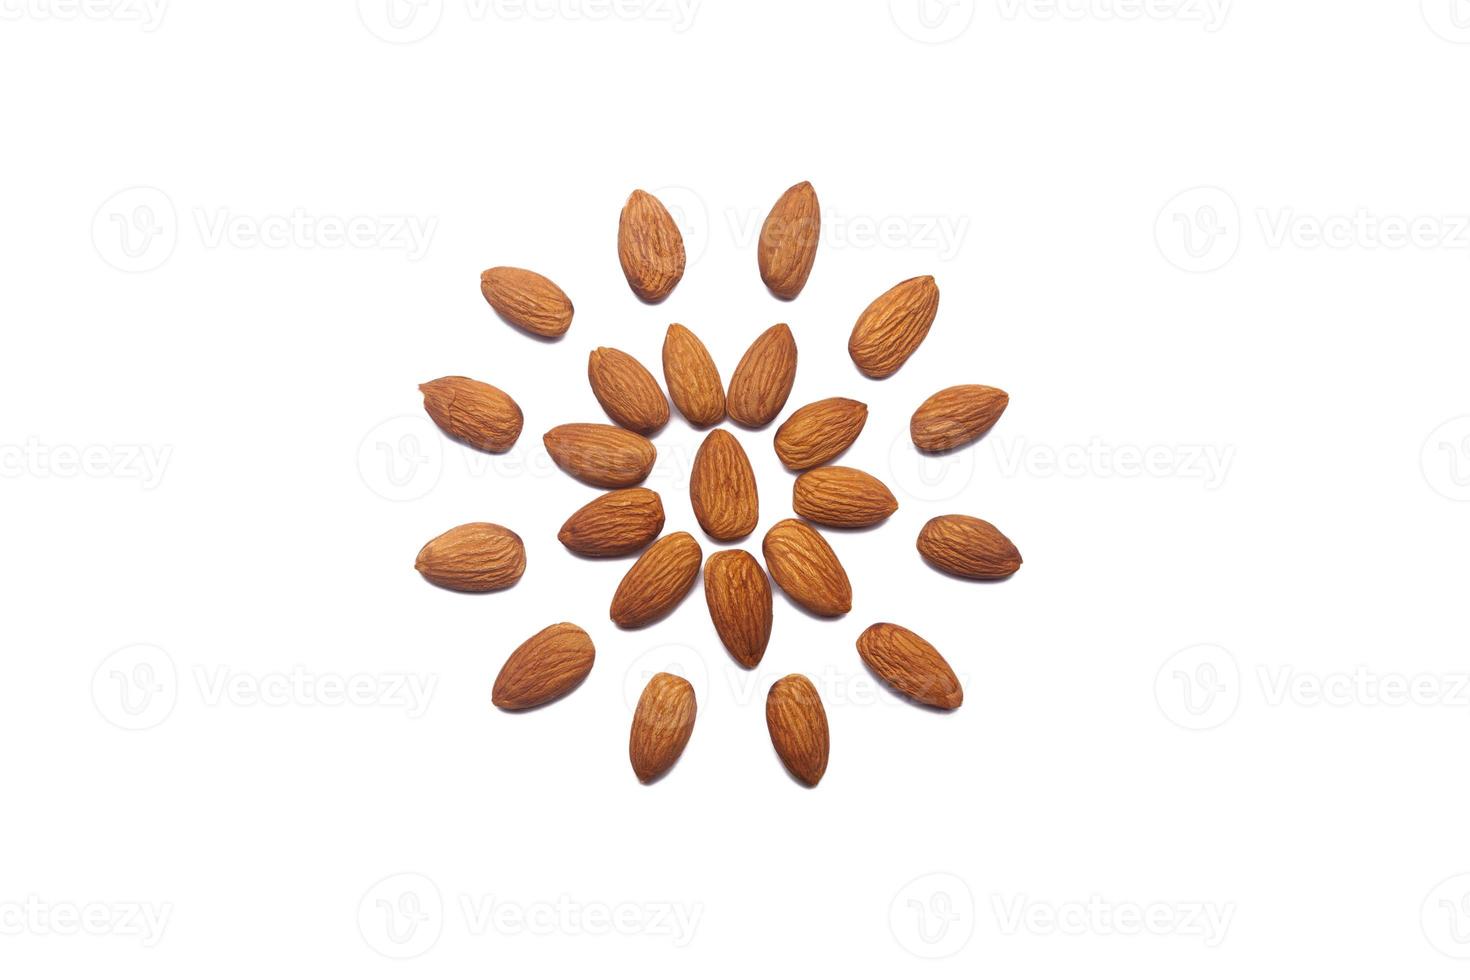 mönster av nötter - skalad mandlar på en vit bakgrund i de form av en cirkel. begrepp handla om dekoration, friska äter och mat bakgrund. foto